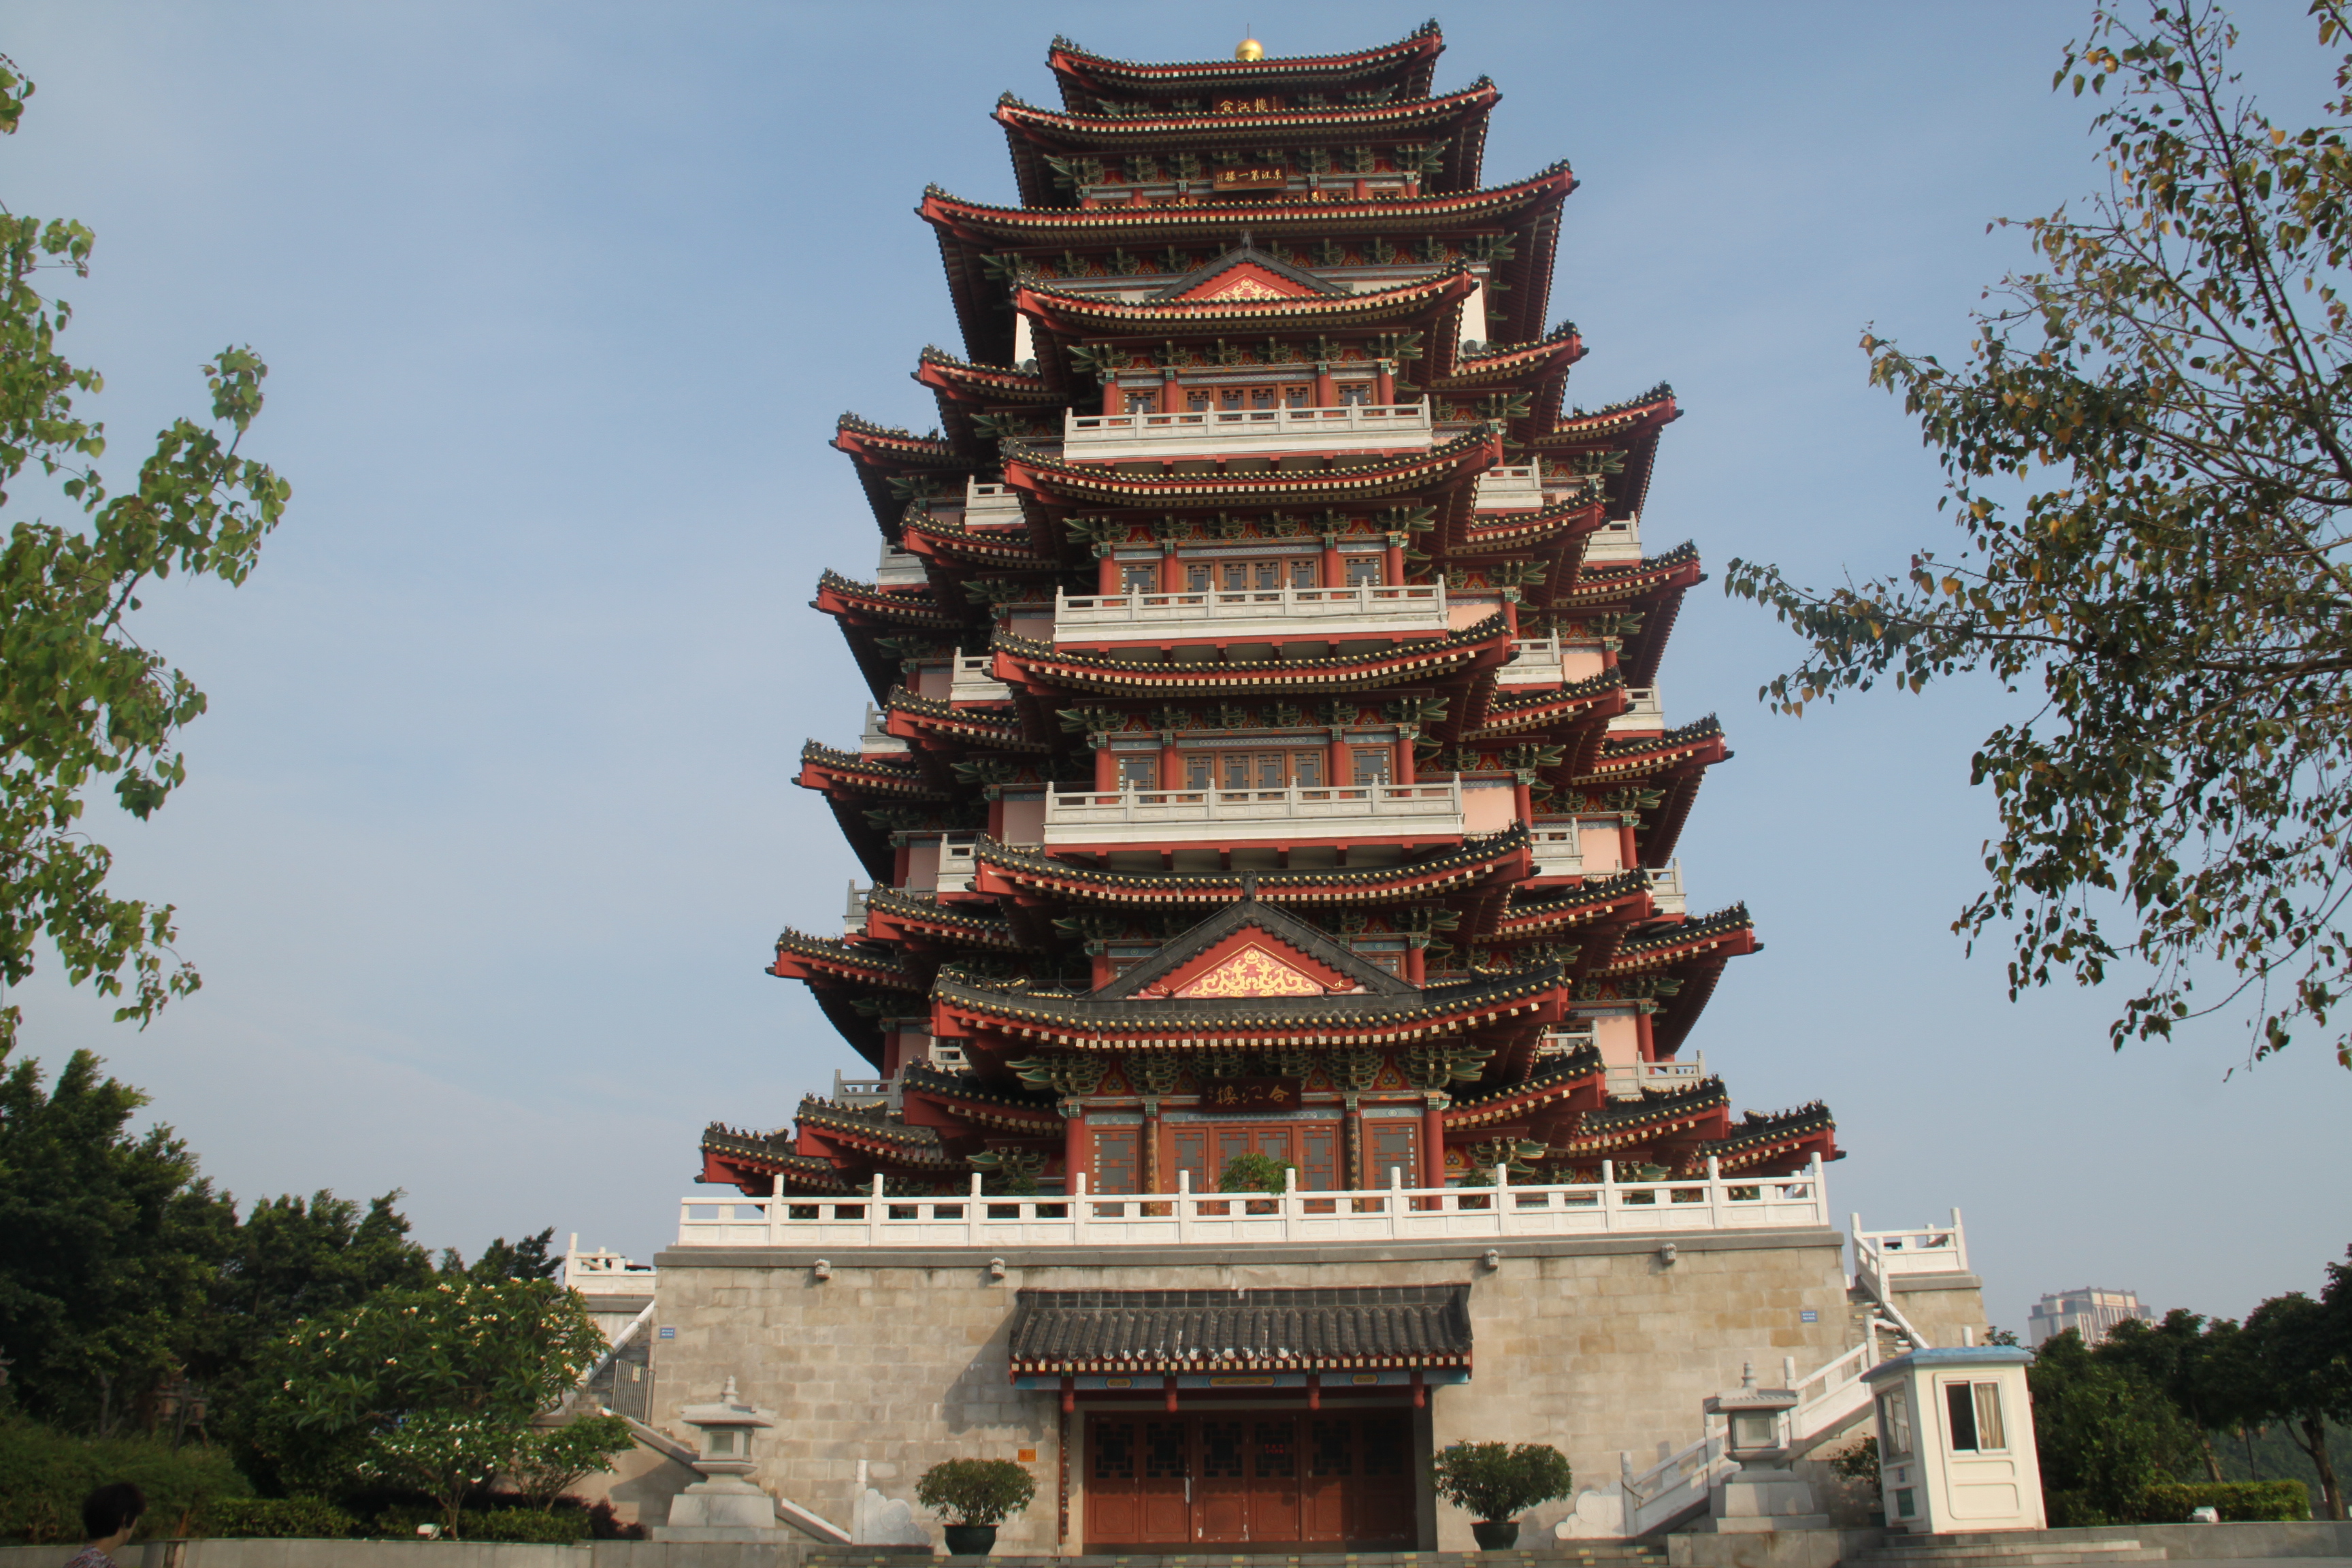 古合江楼位于东江和西枝江的合流处,数百年来,一直是惠州城的地标